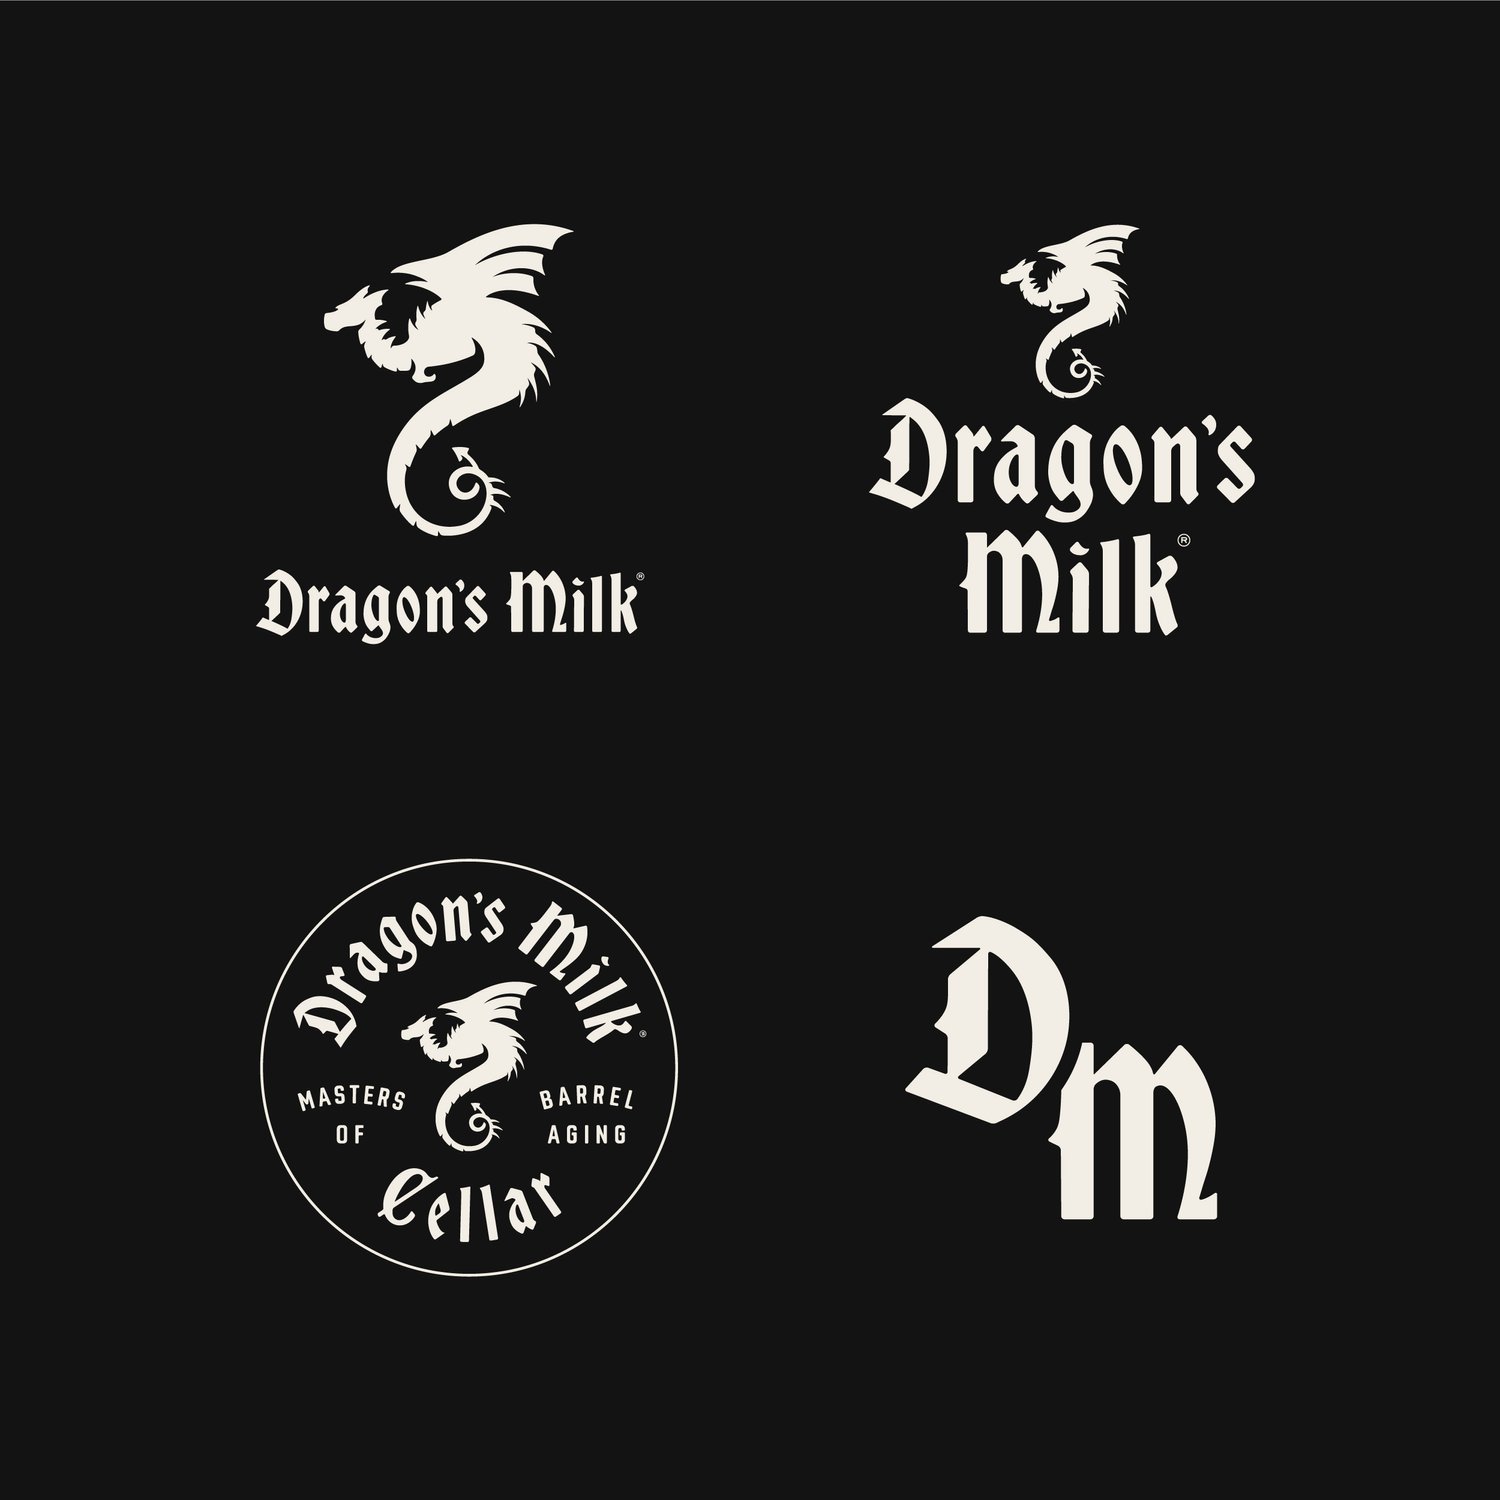 DragonsMilk-Website-CaseStudy-brandmarks.jpg